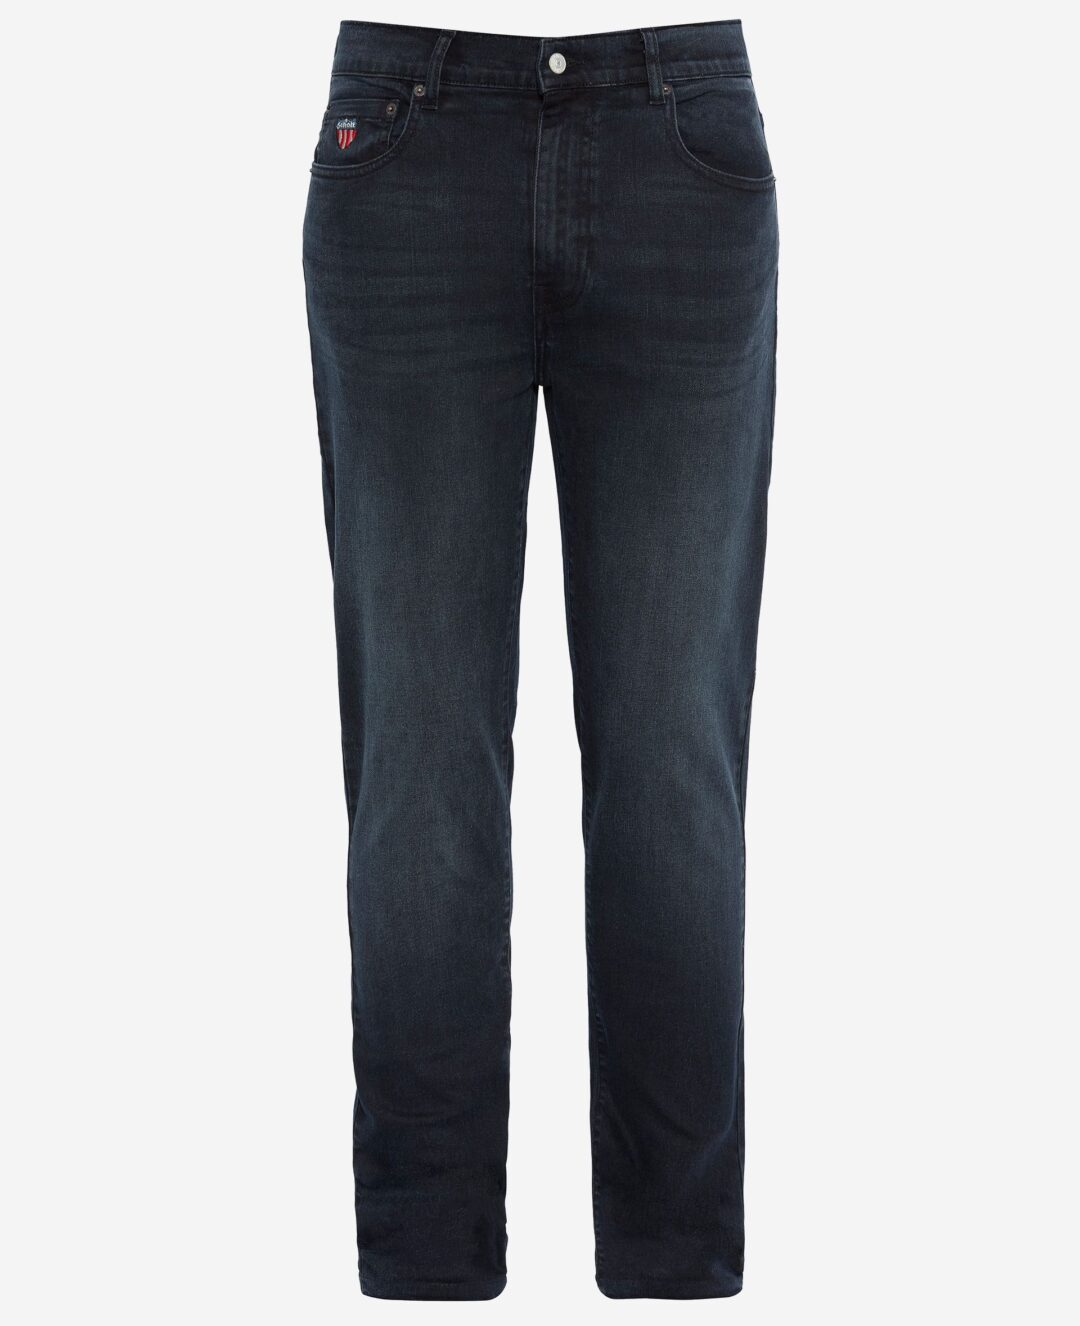 Schott NYC Slim fit jeans TRD1310 DARK WASH